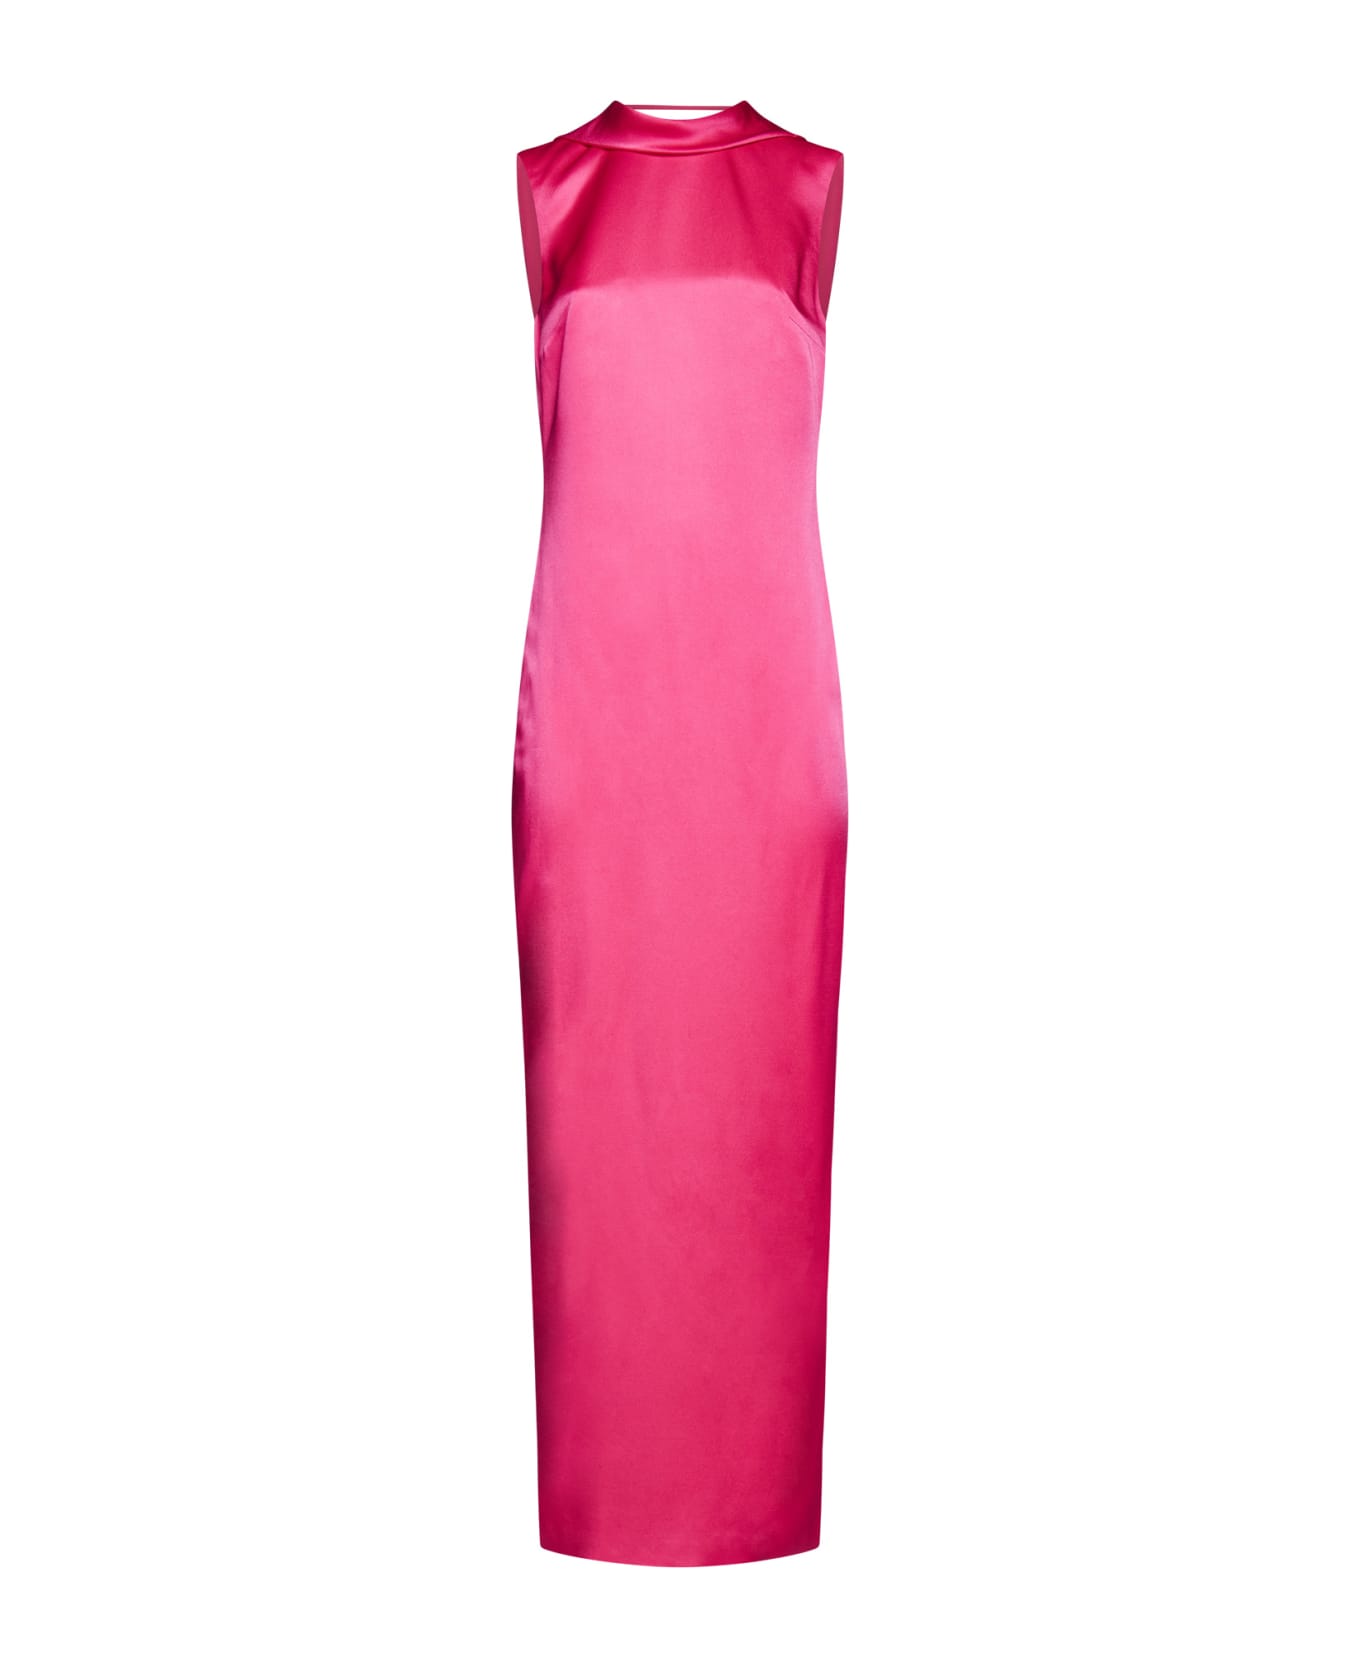 Versace Draped Sheath Dress - Pink